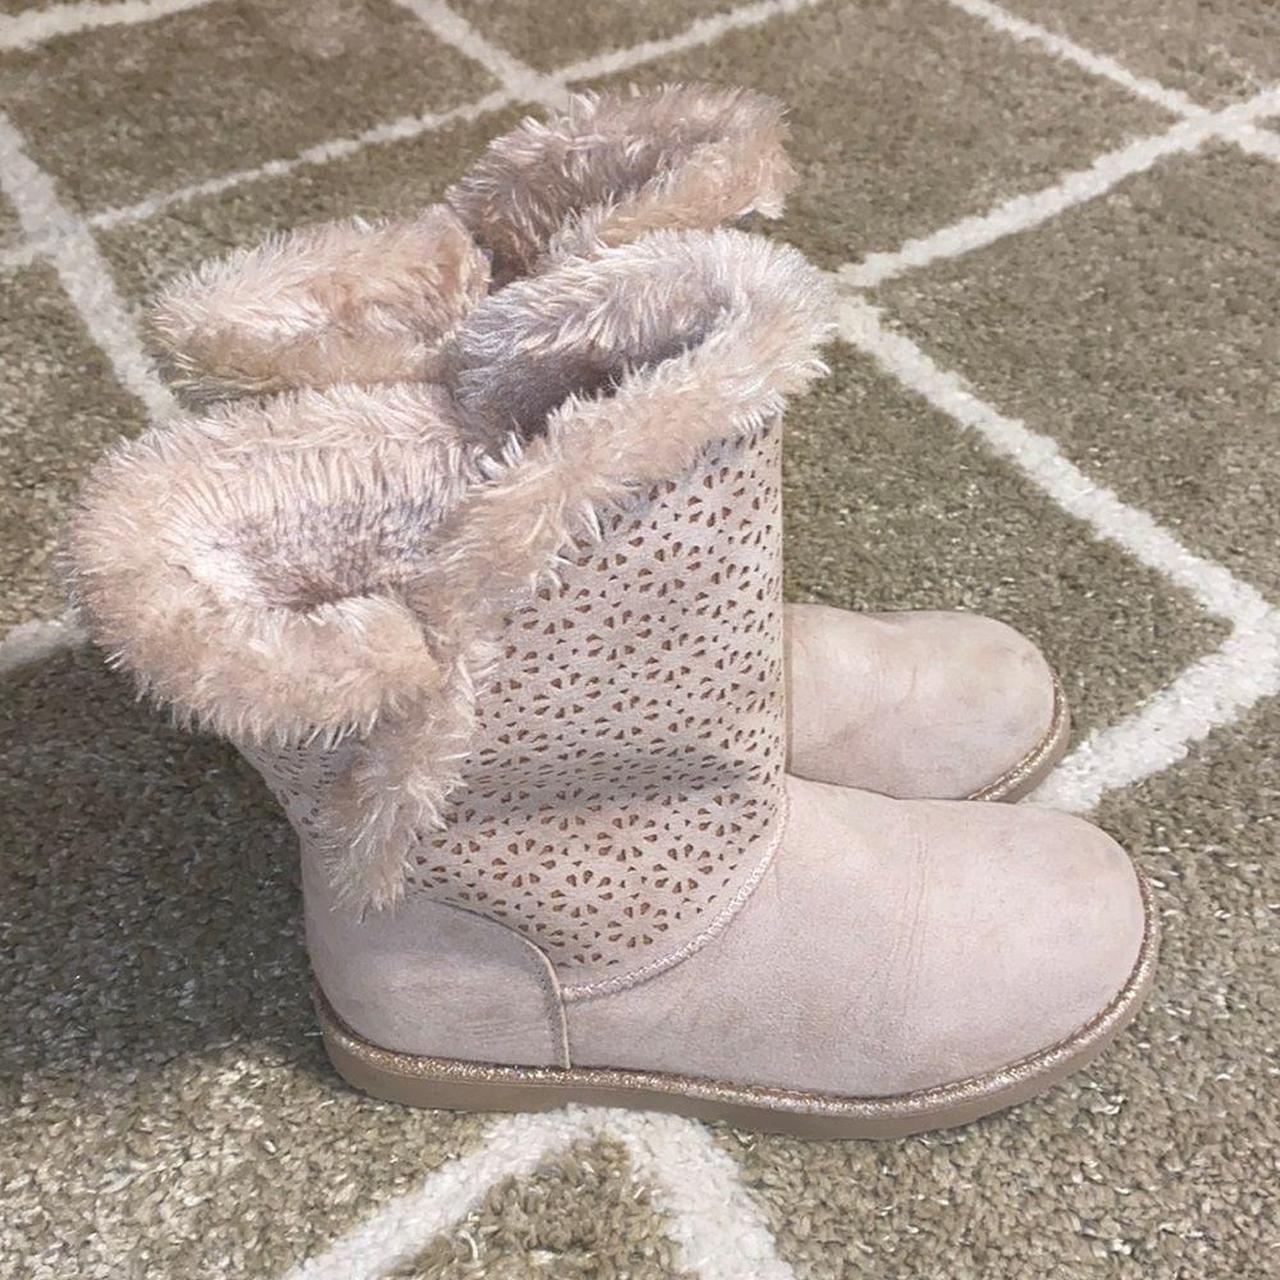 Magellan Outdoors Girls' Glitter Faux Fur Boots III